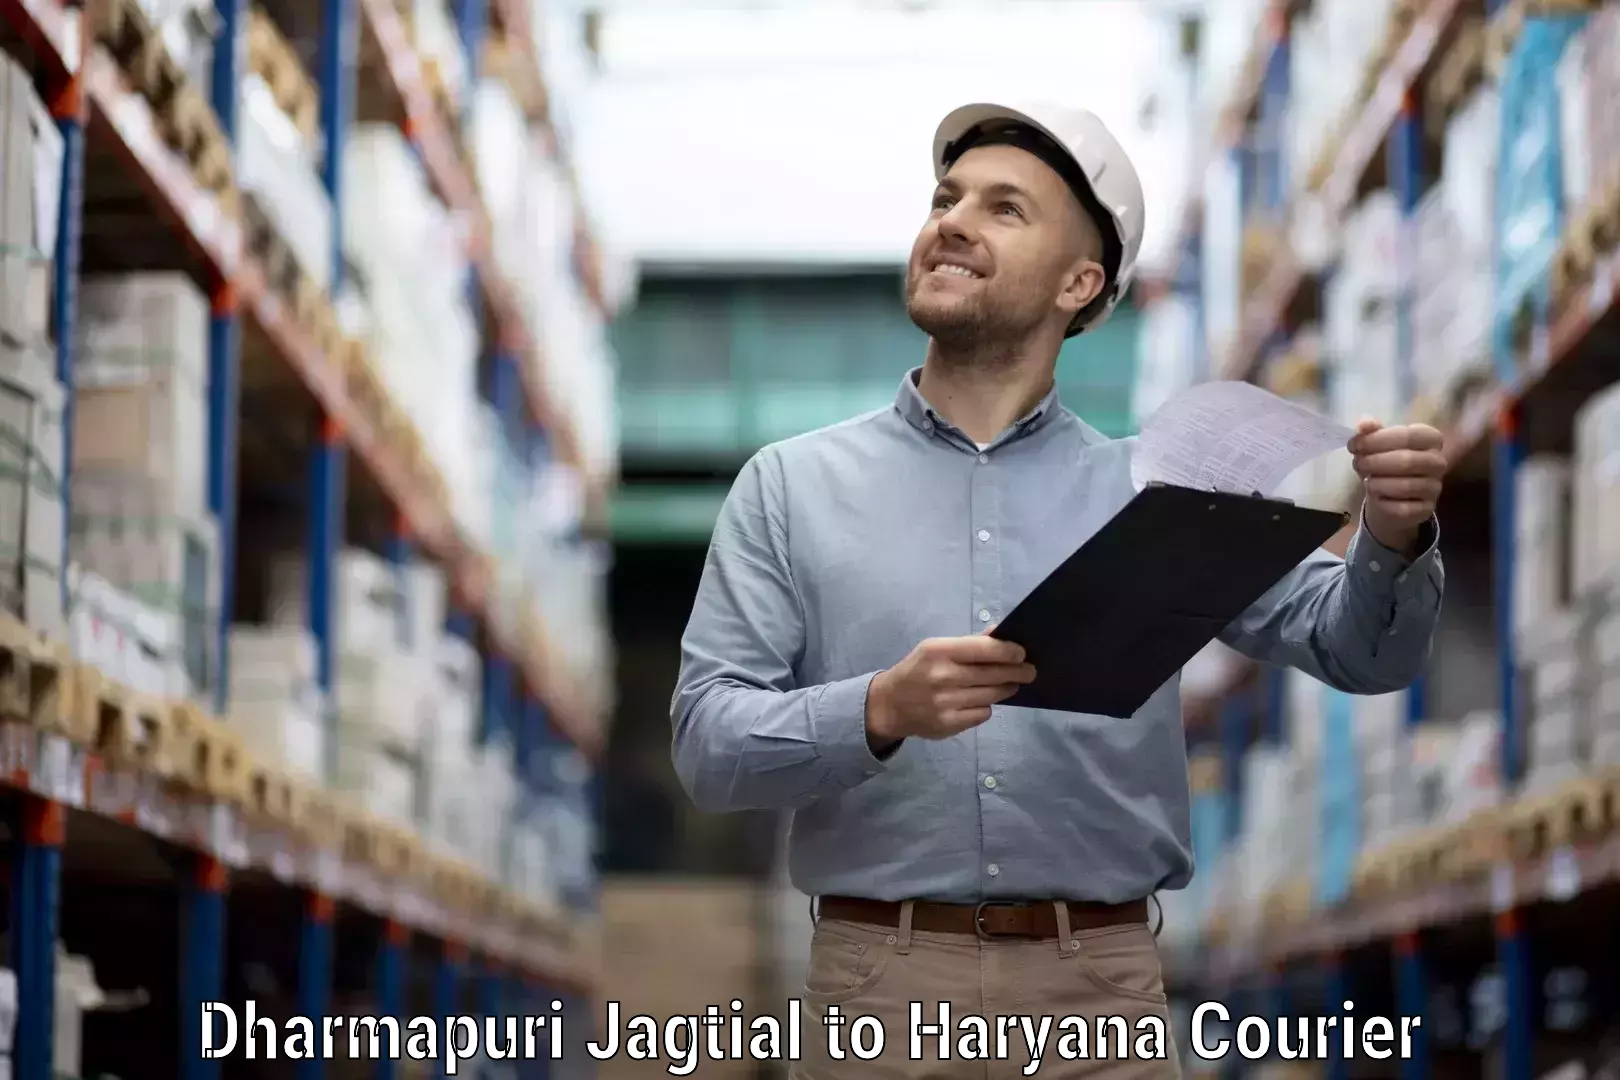 Comprehensive delivery network Dharmapuri Jagtial to Karnal